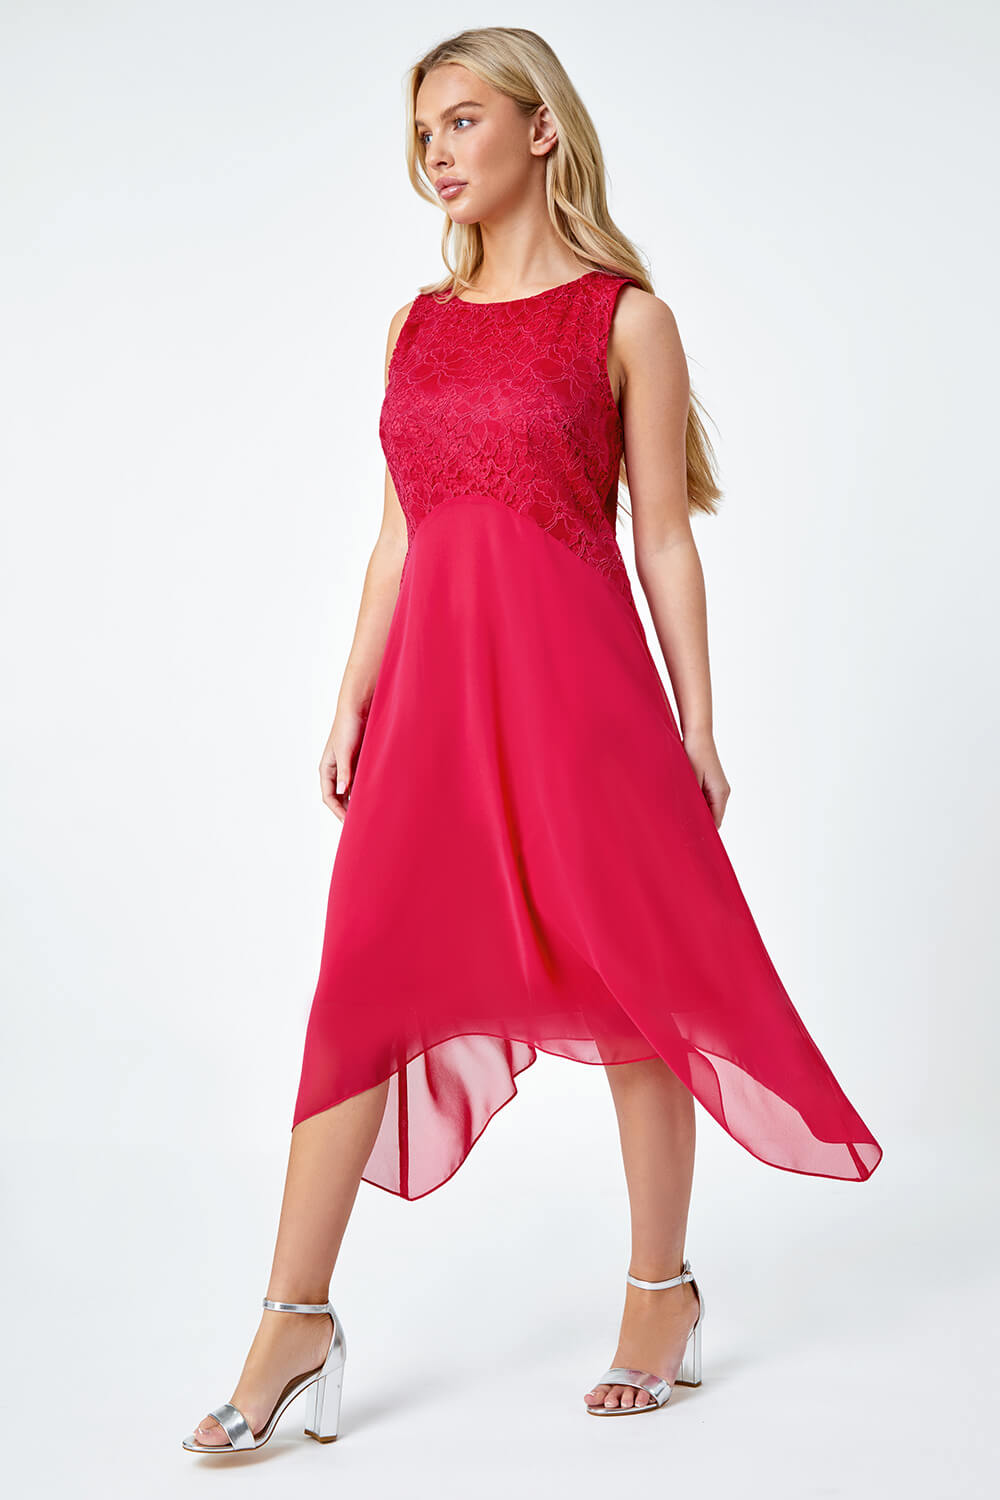 CERISE Petite Lace Bodice Chiffon Dress, Image 2 of 5